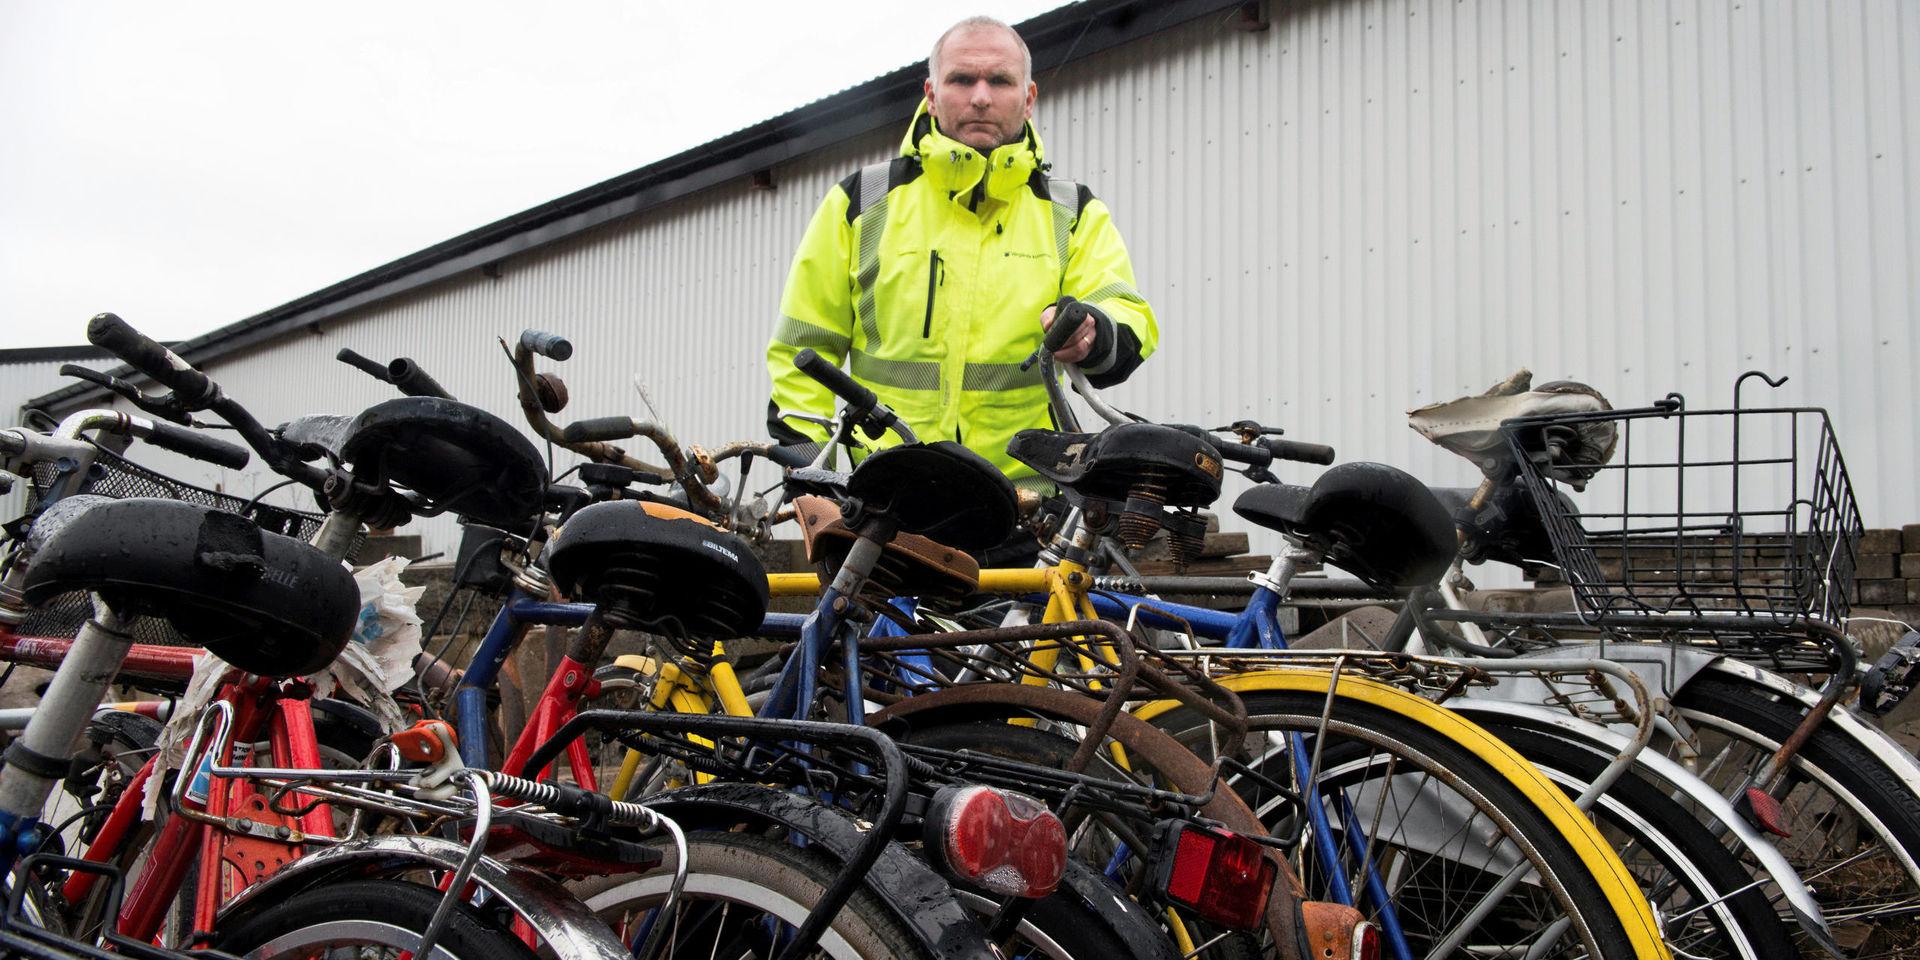 Kommunens gatuingenjör Daniel Miglavs konstaterar att det är oklart vad som kommer att hända de övergivna cyklarna. Kanske kommer de att skrotas.